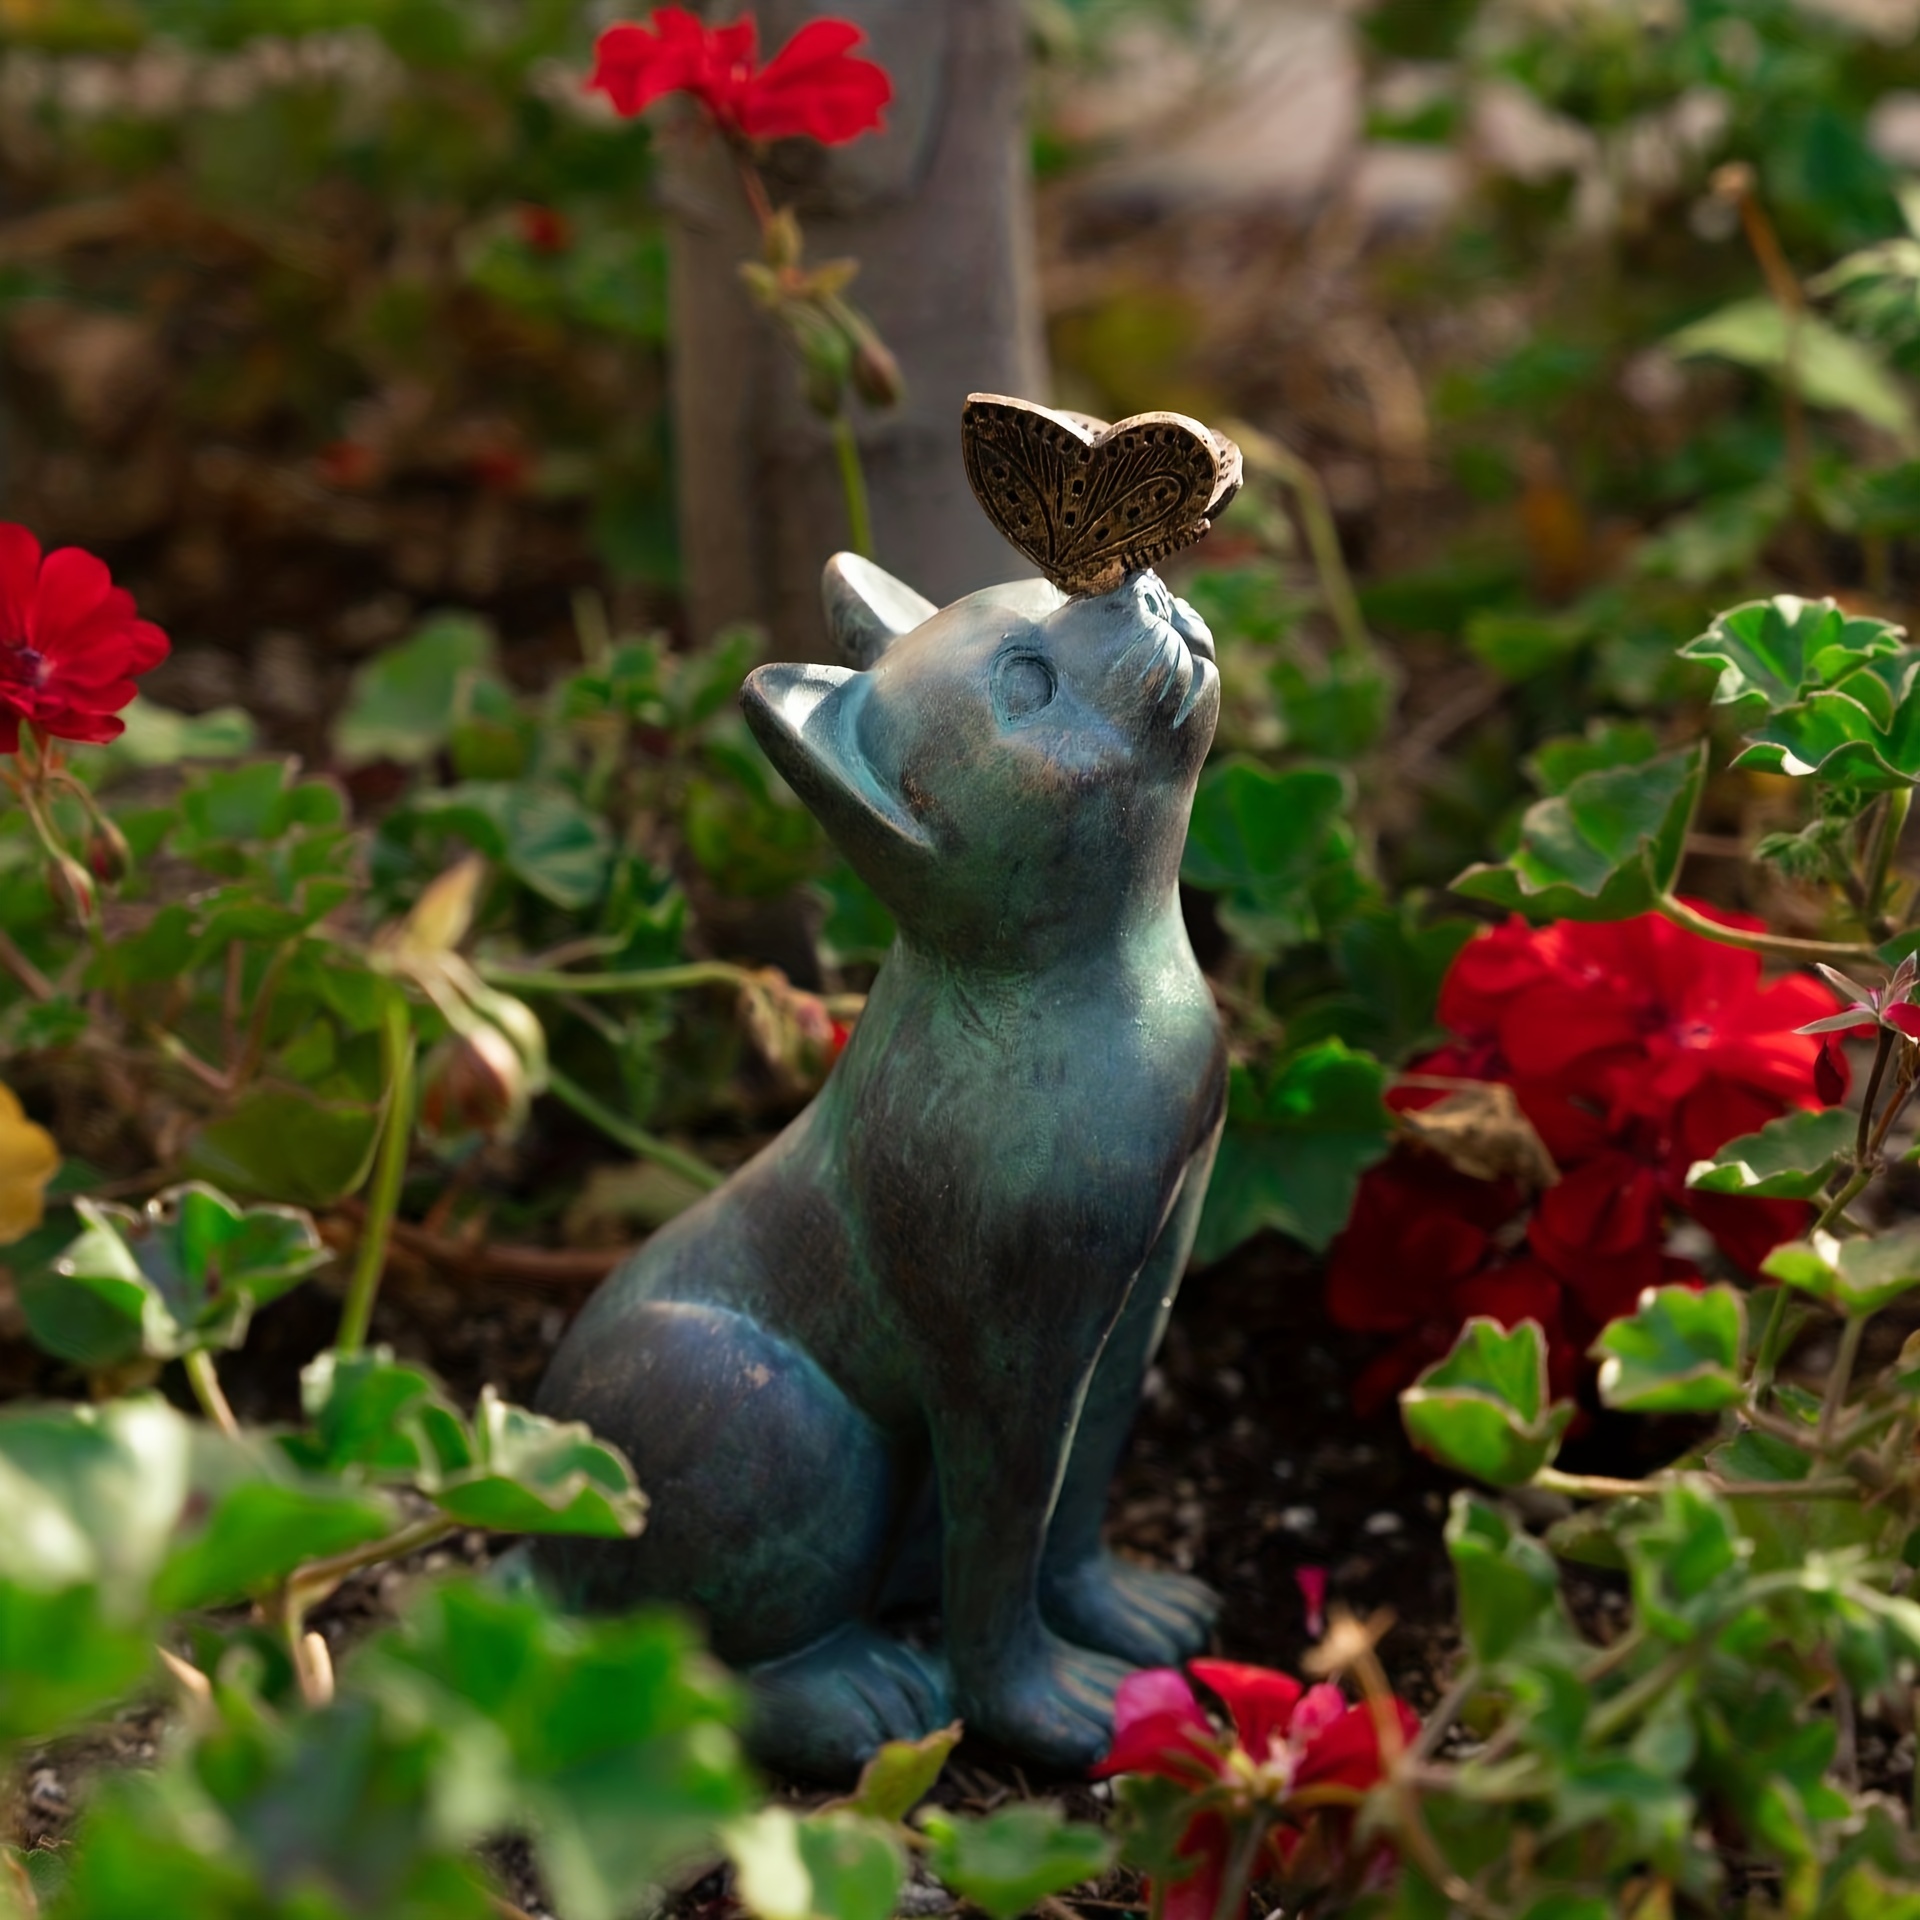 XXU décor extérieur de jardin Décor de jardin extérieur Statues de chat  Ornements de chaton Décorations de jardinage XU010